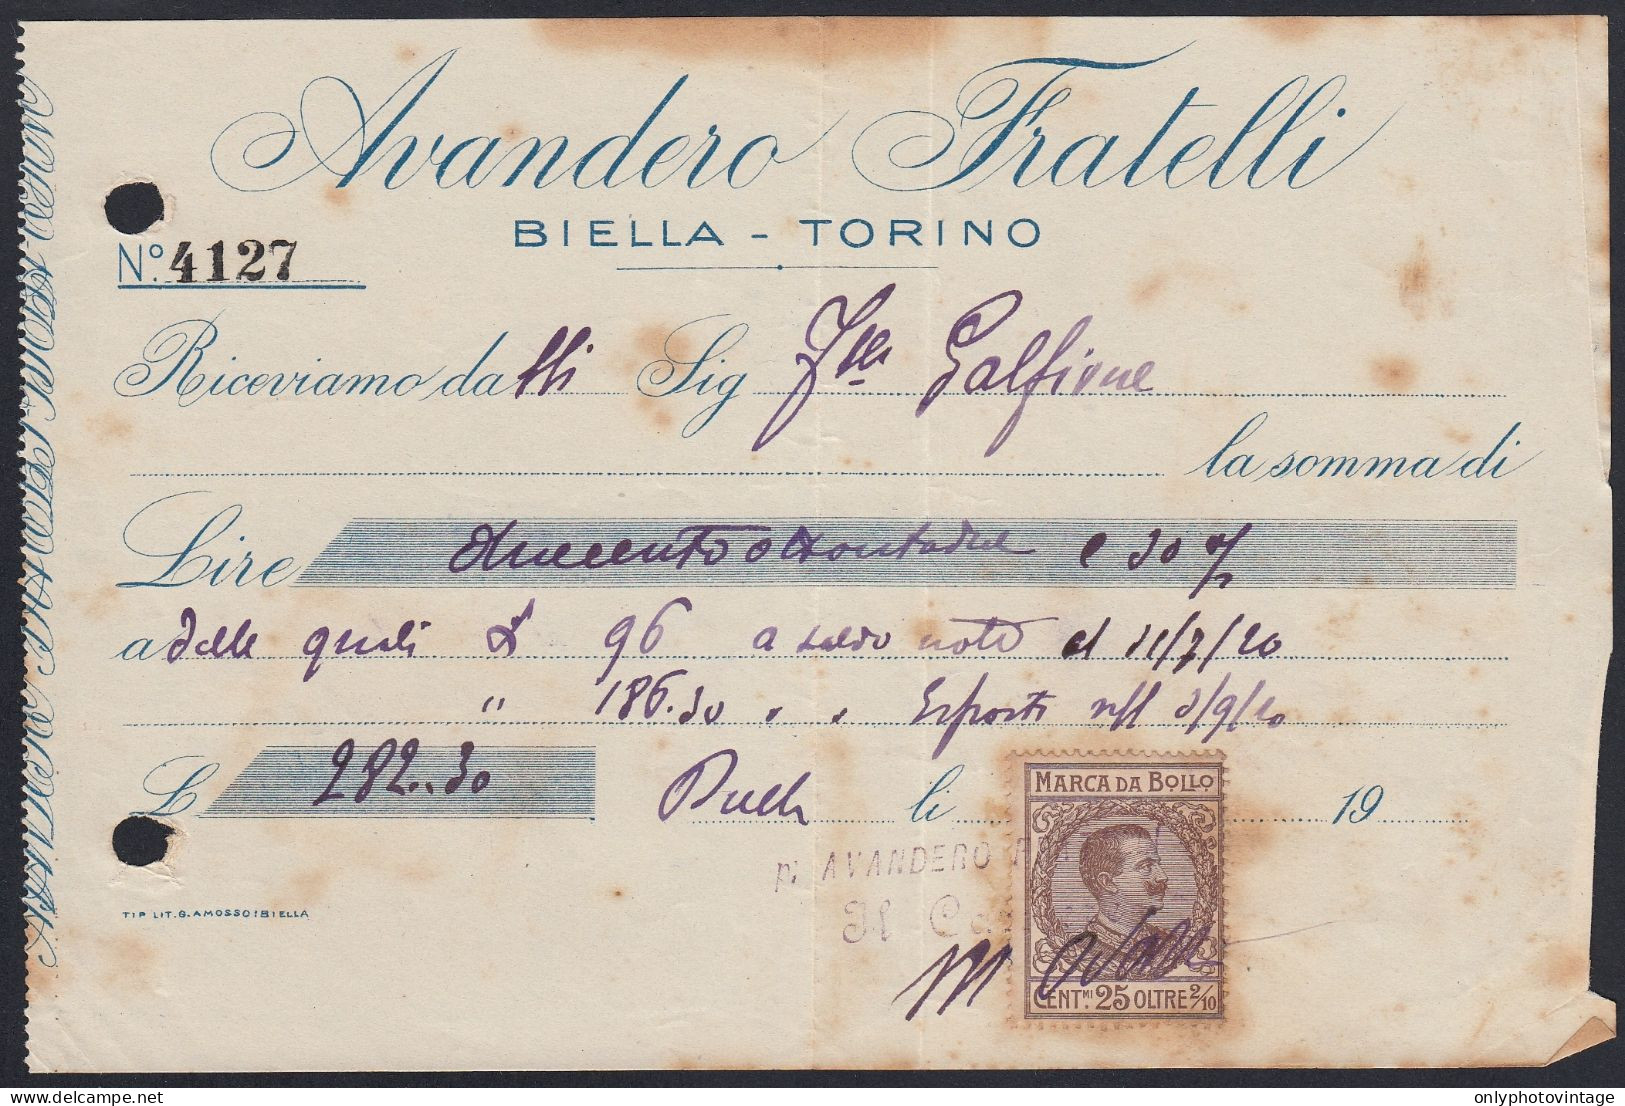 Biella 1920 - Avandero Fratelli - Marca Da Bollo - Ricevuta Pagamento - Italie